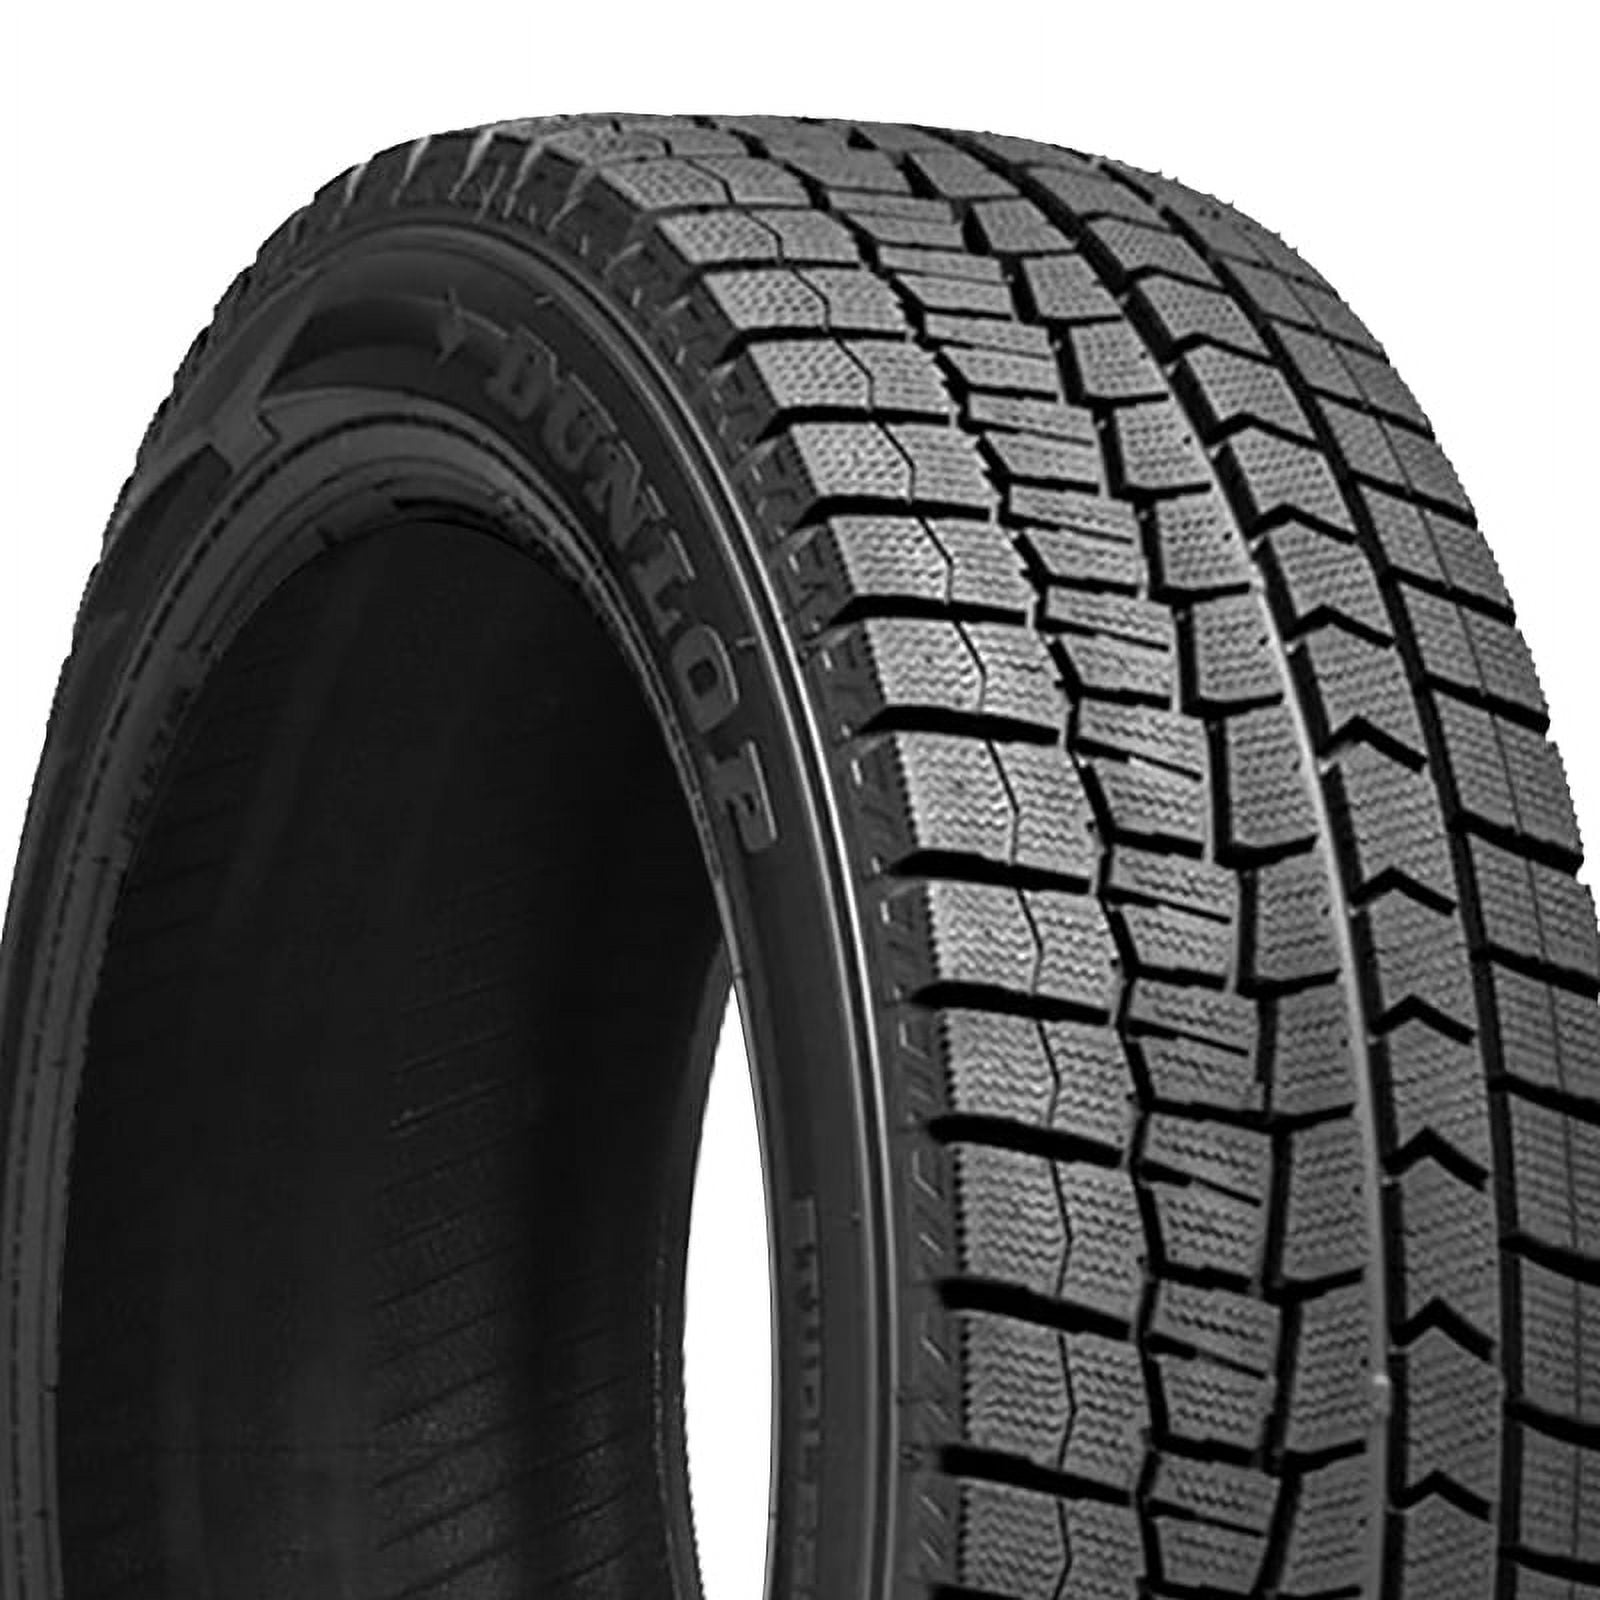 Dunlop Winter Maxx 175/70R14 84T 2 Winter Tire